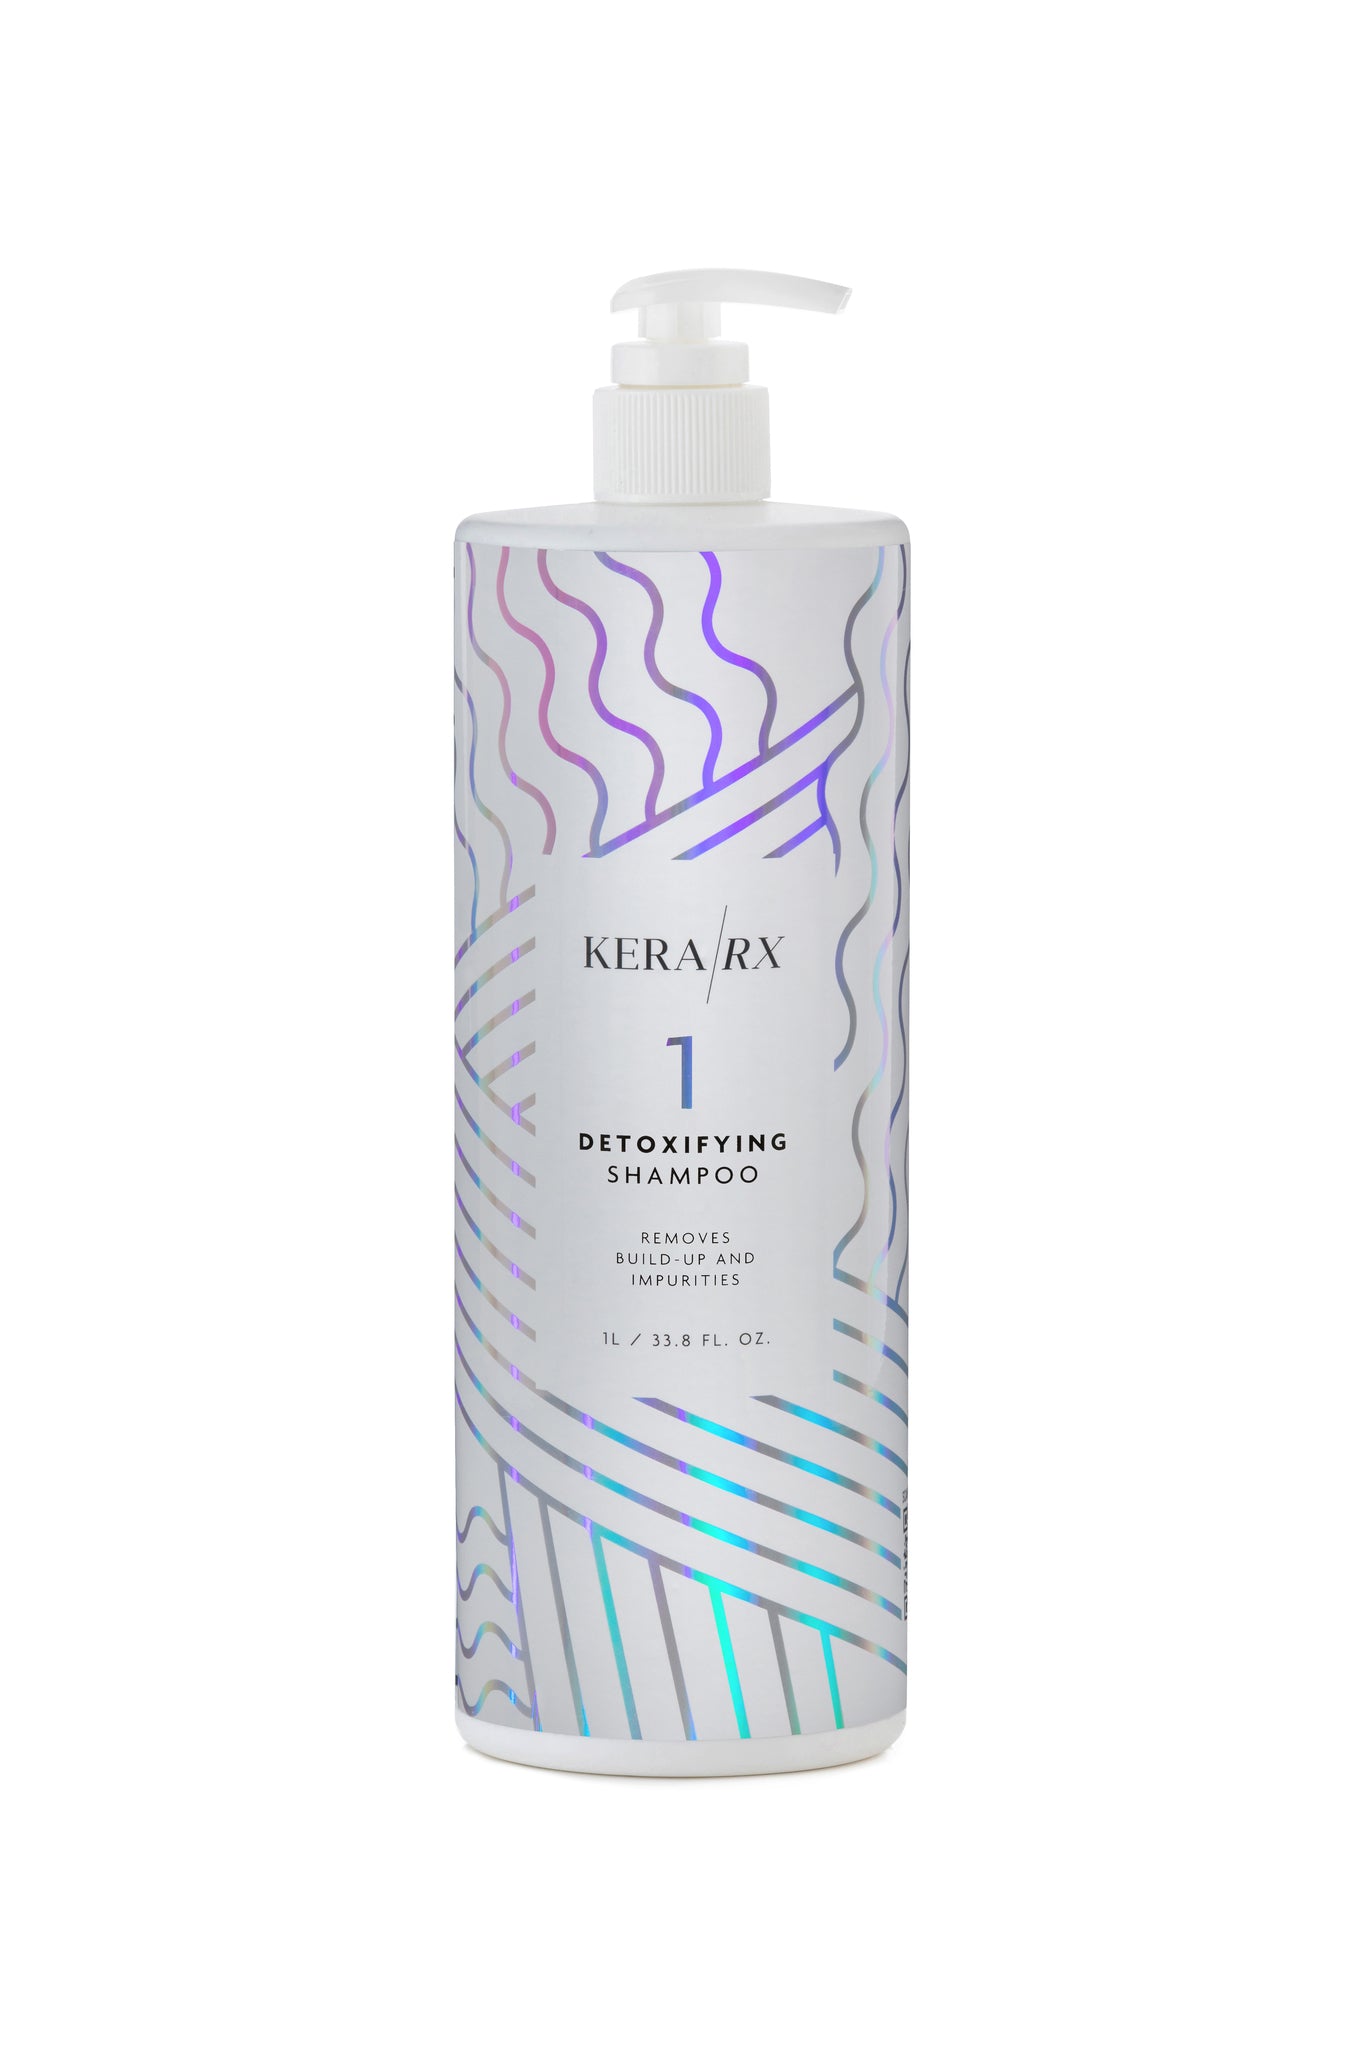 Detoxifying Shampoo | Kera/RX Haircare